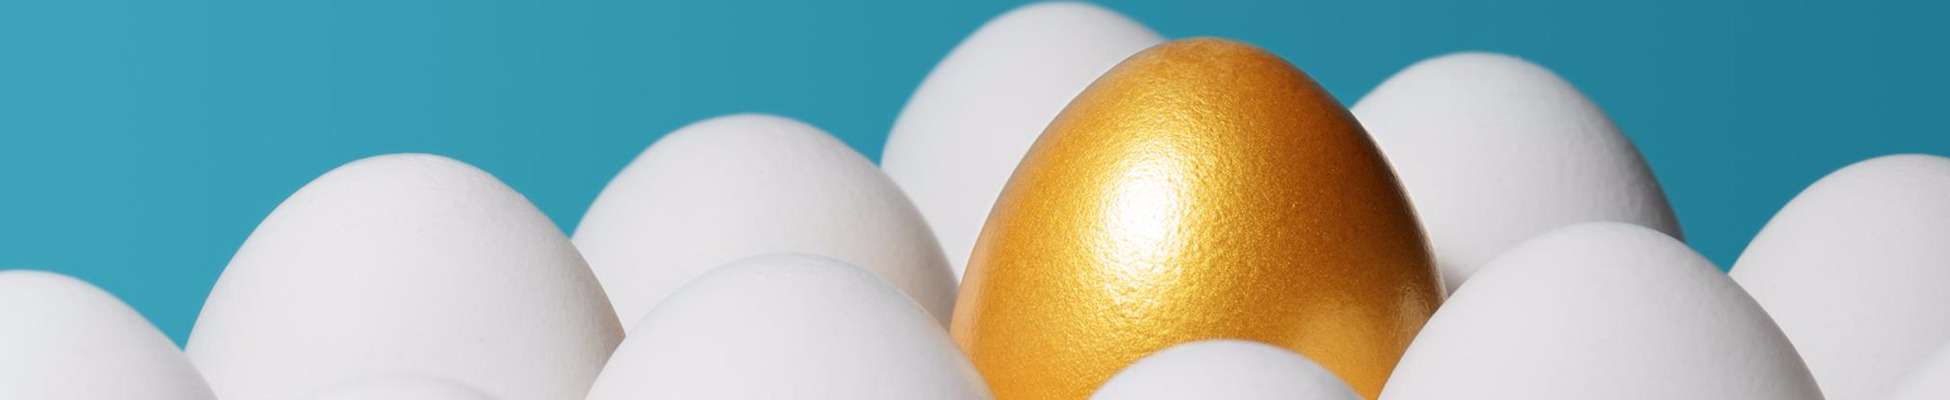 gold egg amongst white eggs